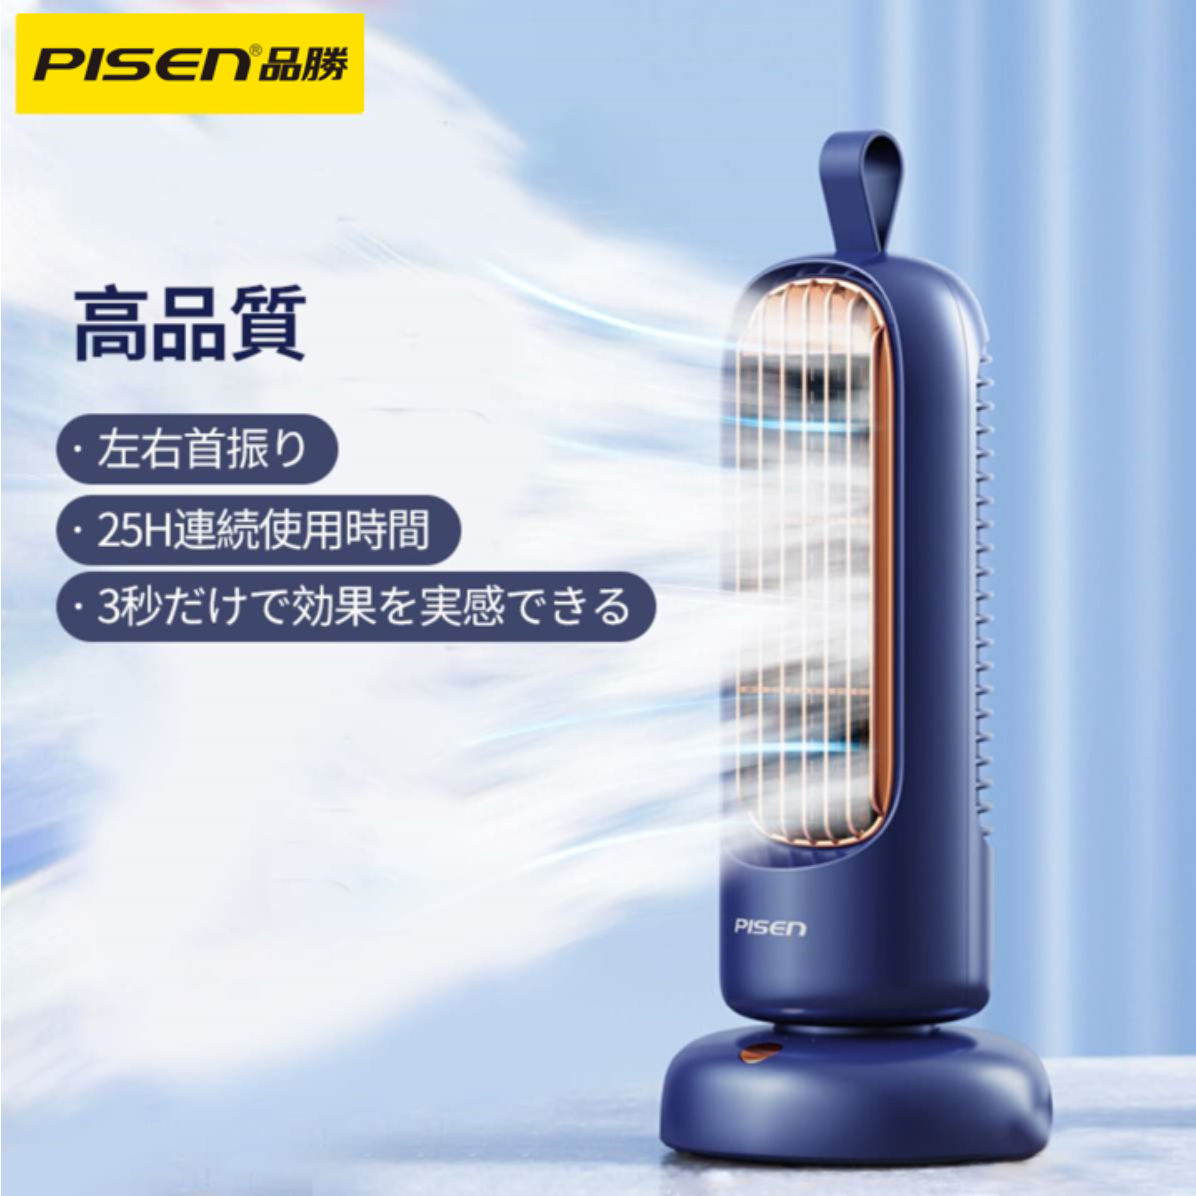 PISEN 左右振り式扇風機｜おしゃれな外観＆お手入れが簡単＆安心安全・熱中症対策

|undefined